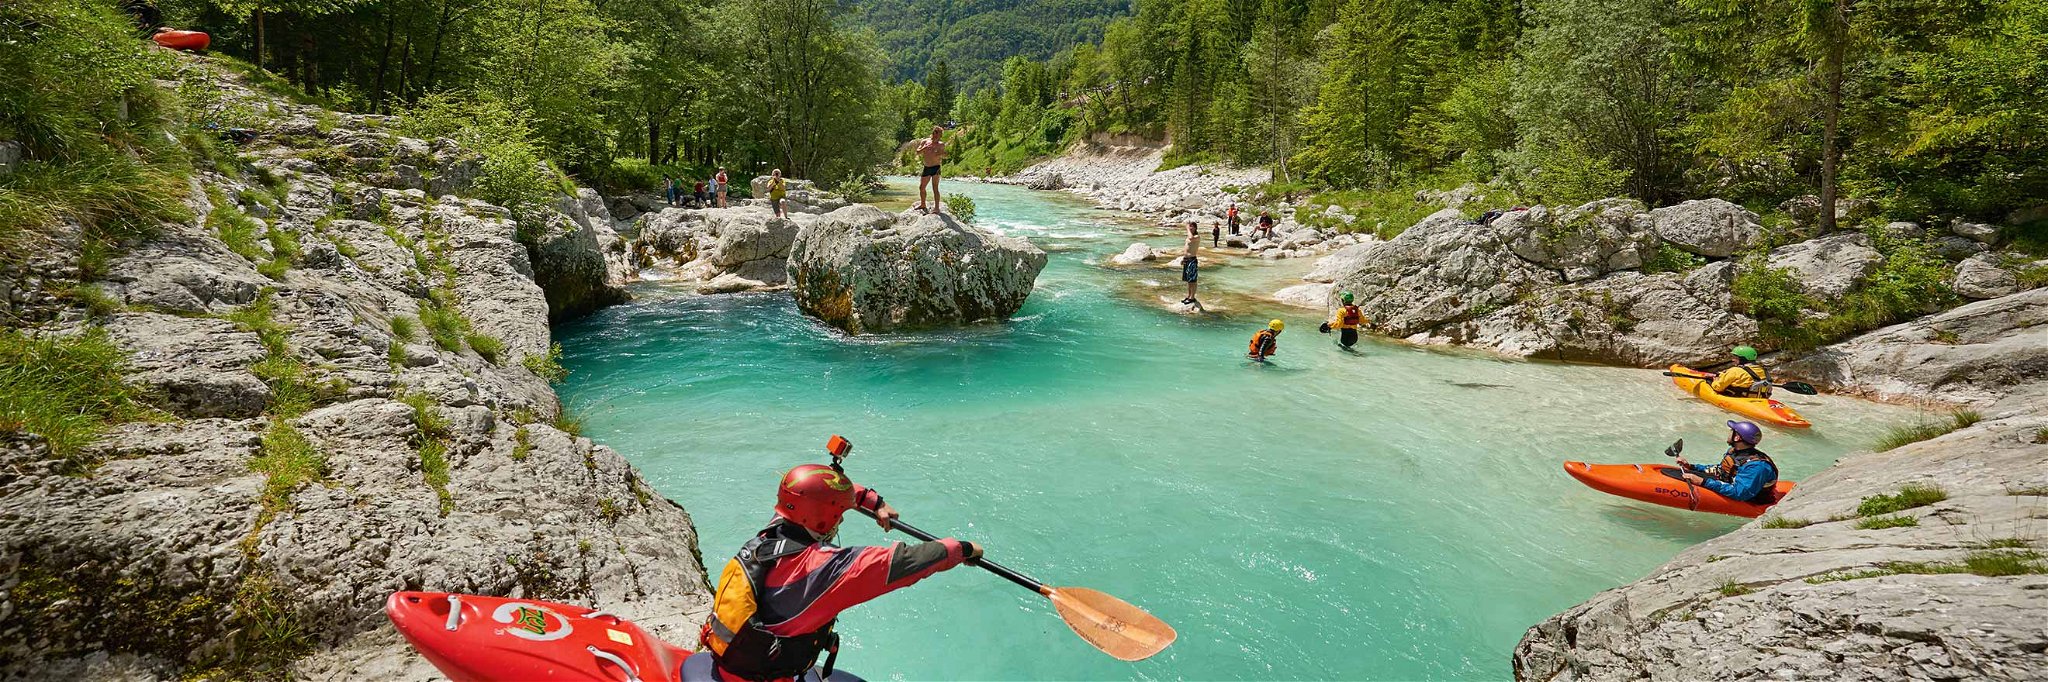 Die Soča ist Sloweniens prägendster Fluss. Ihr Markenzeichen ist die blaugrüne Farbe.